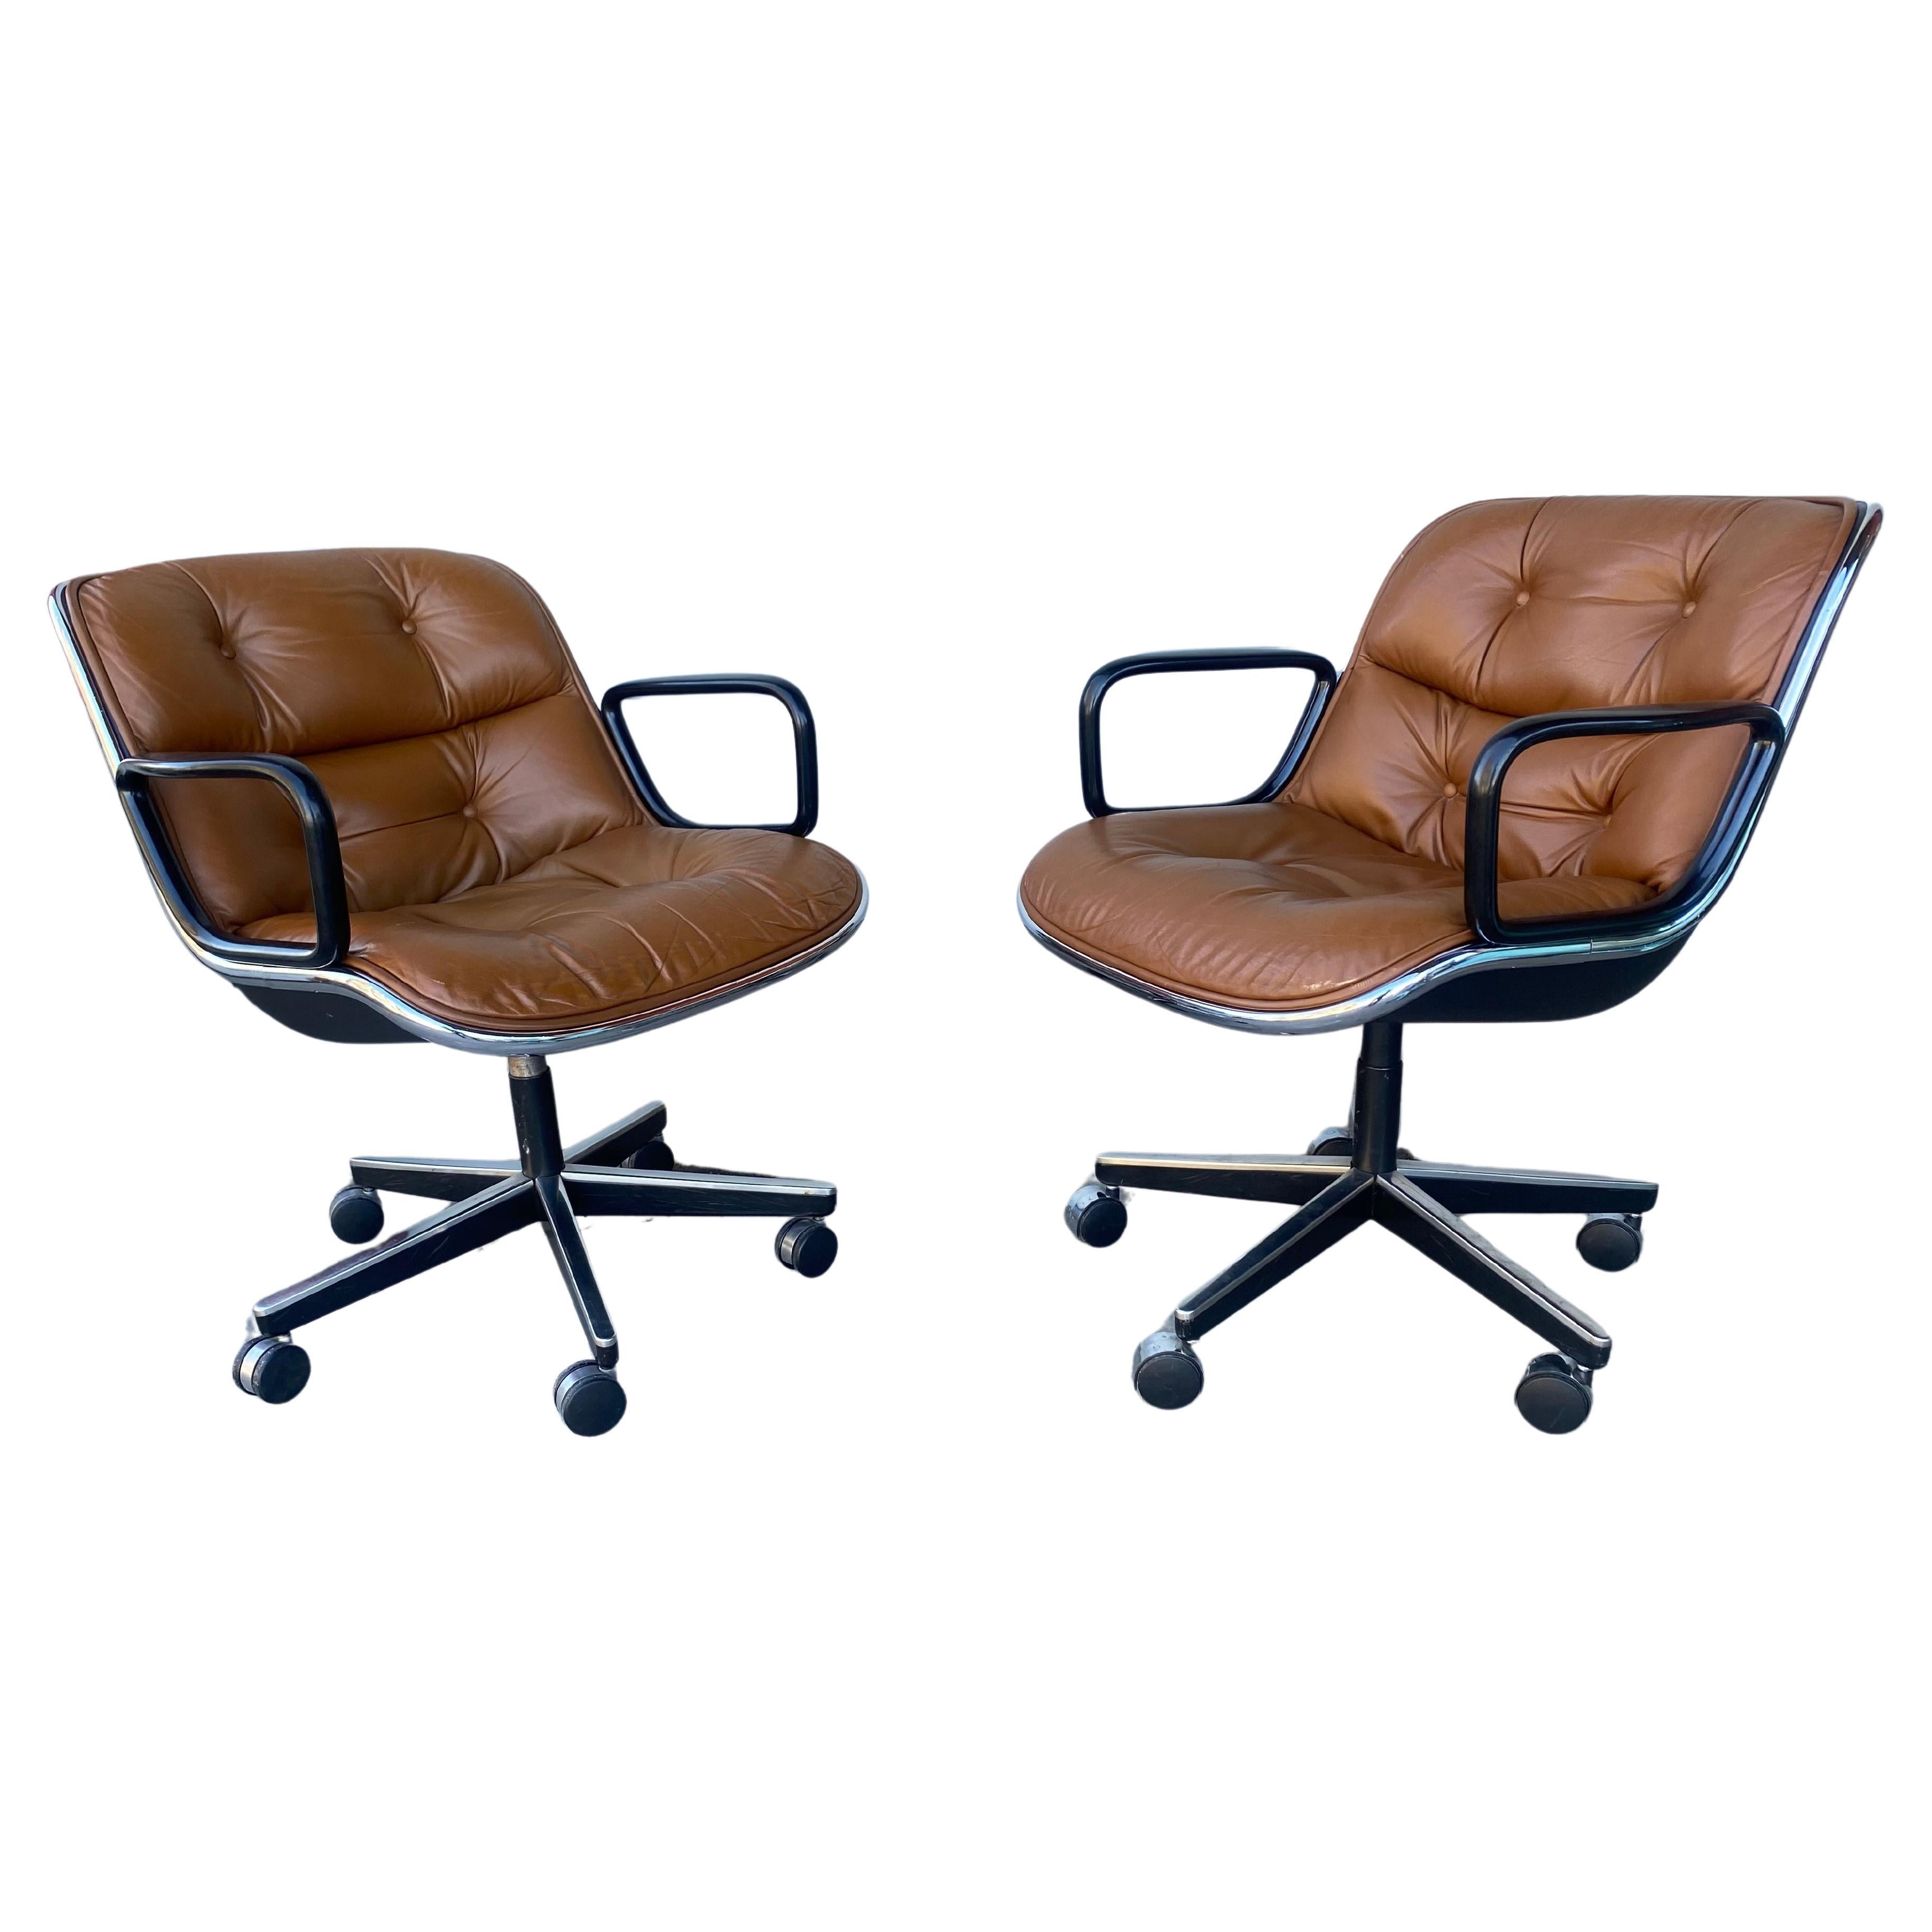 Classic Brown Leather & Chrome Pollock Chairs hergestellt von Knoll , 1980er Jahre